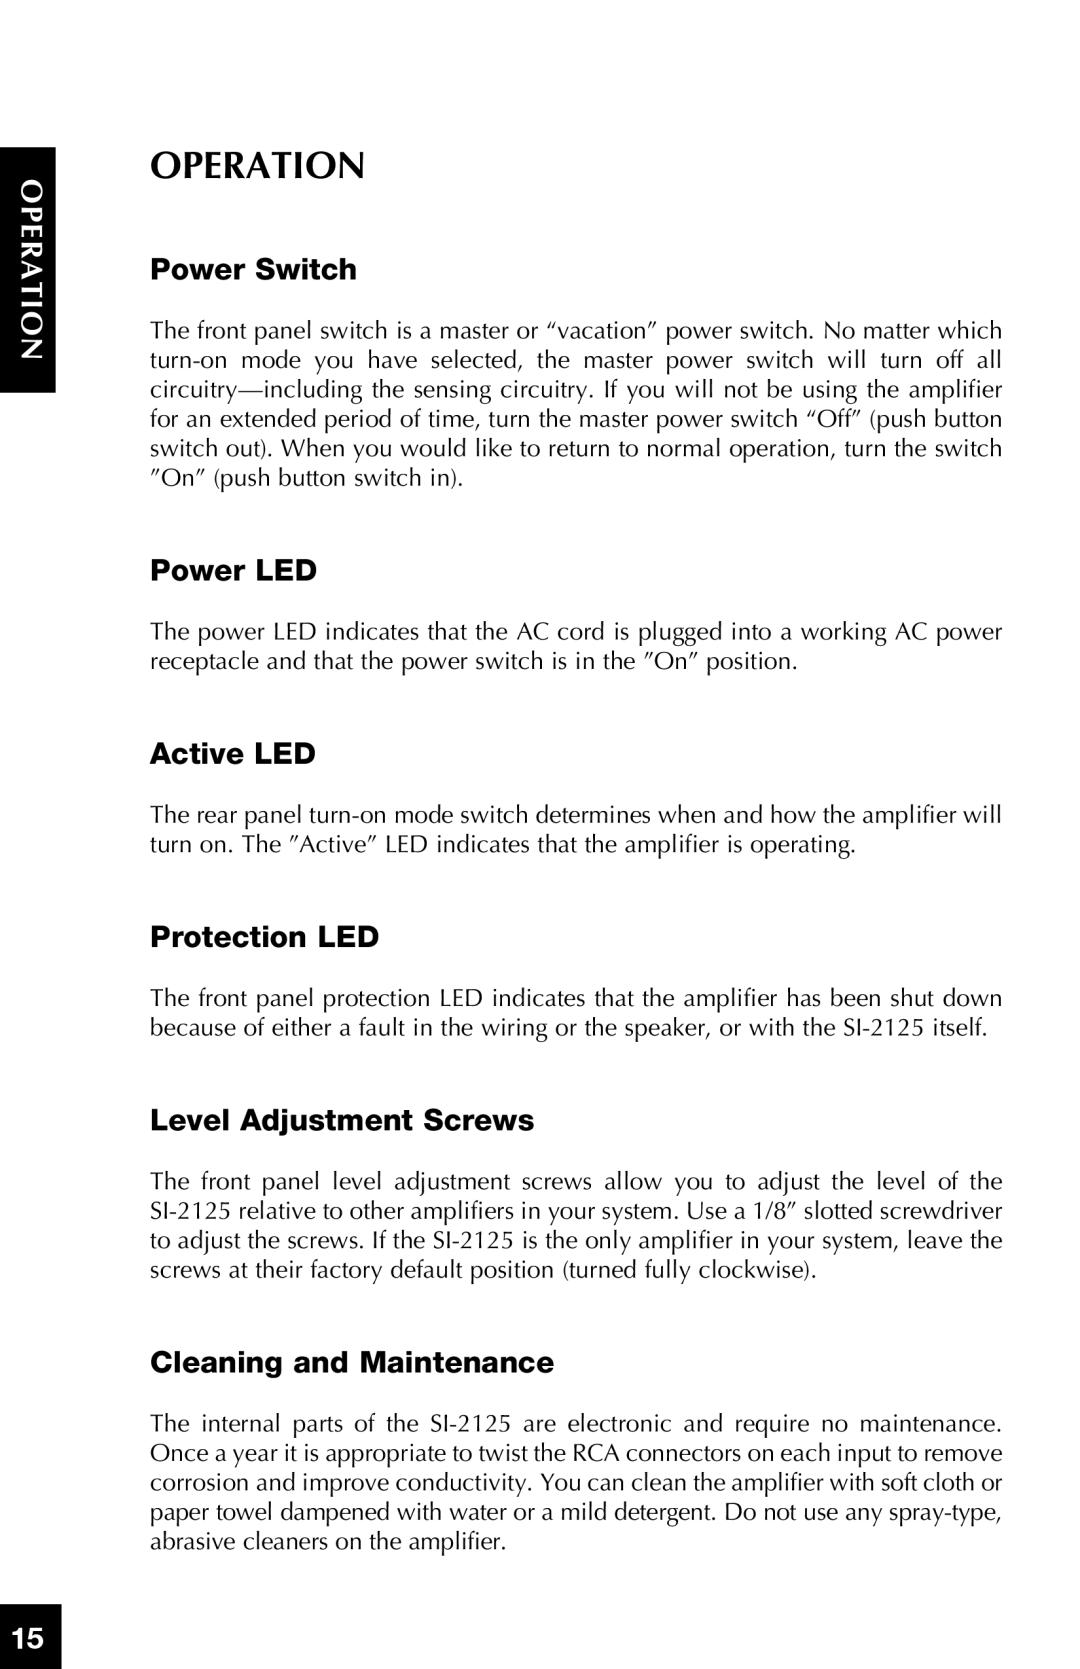 Niles Audio SI-2125 Operation, ep Oration, Power Switch, Power LED, Active LED, Protection LED, Level Adjustment Screws 